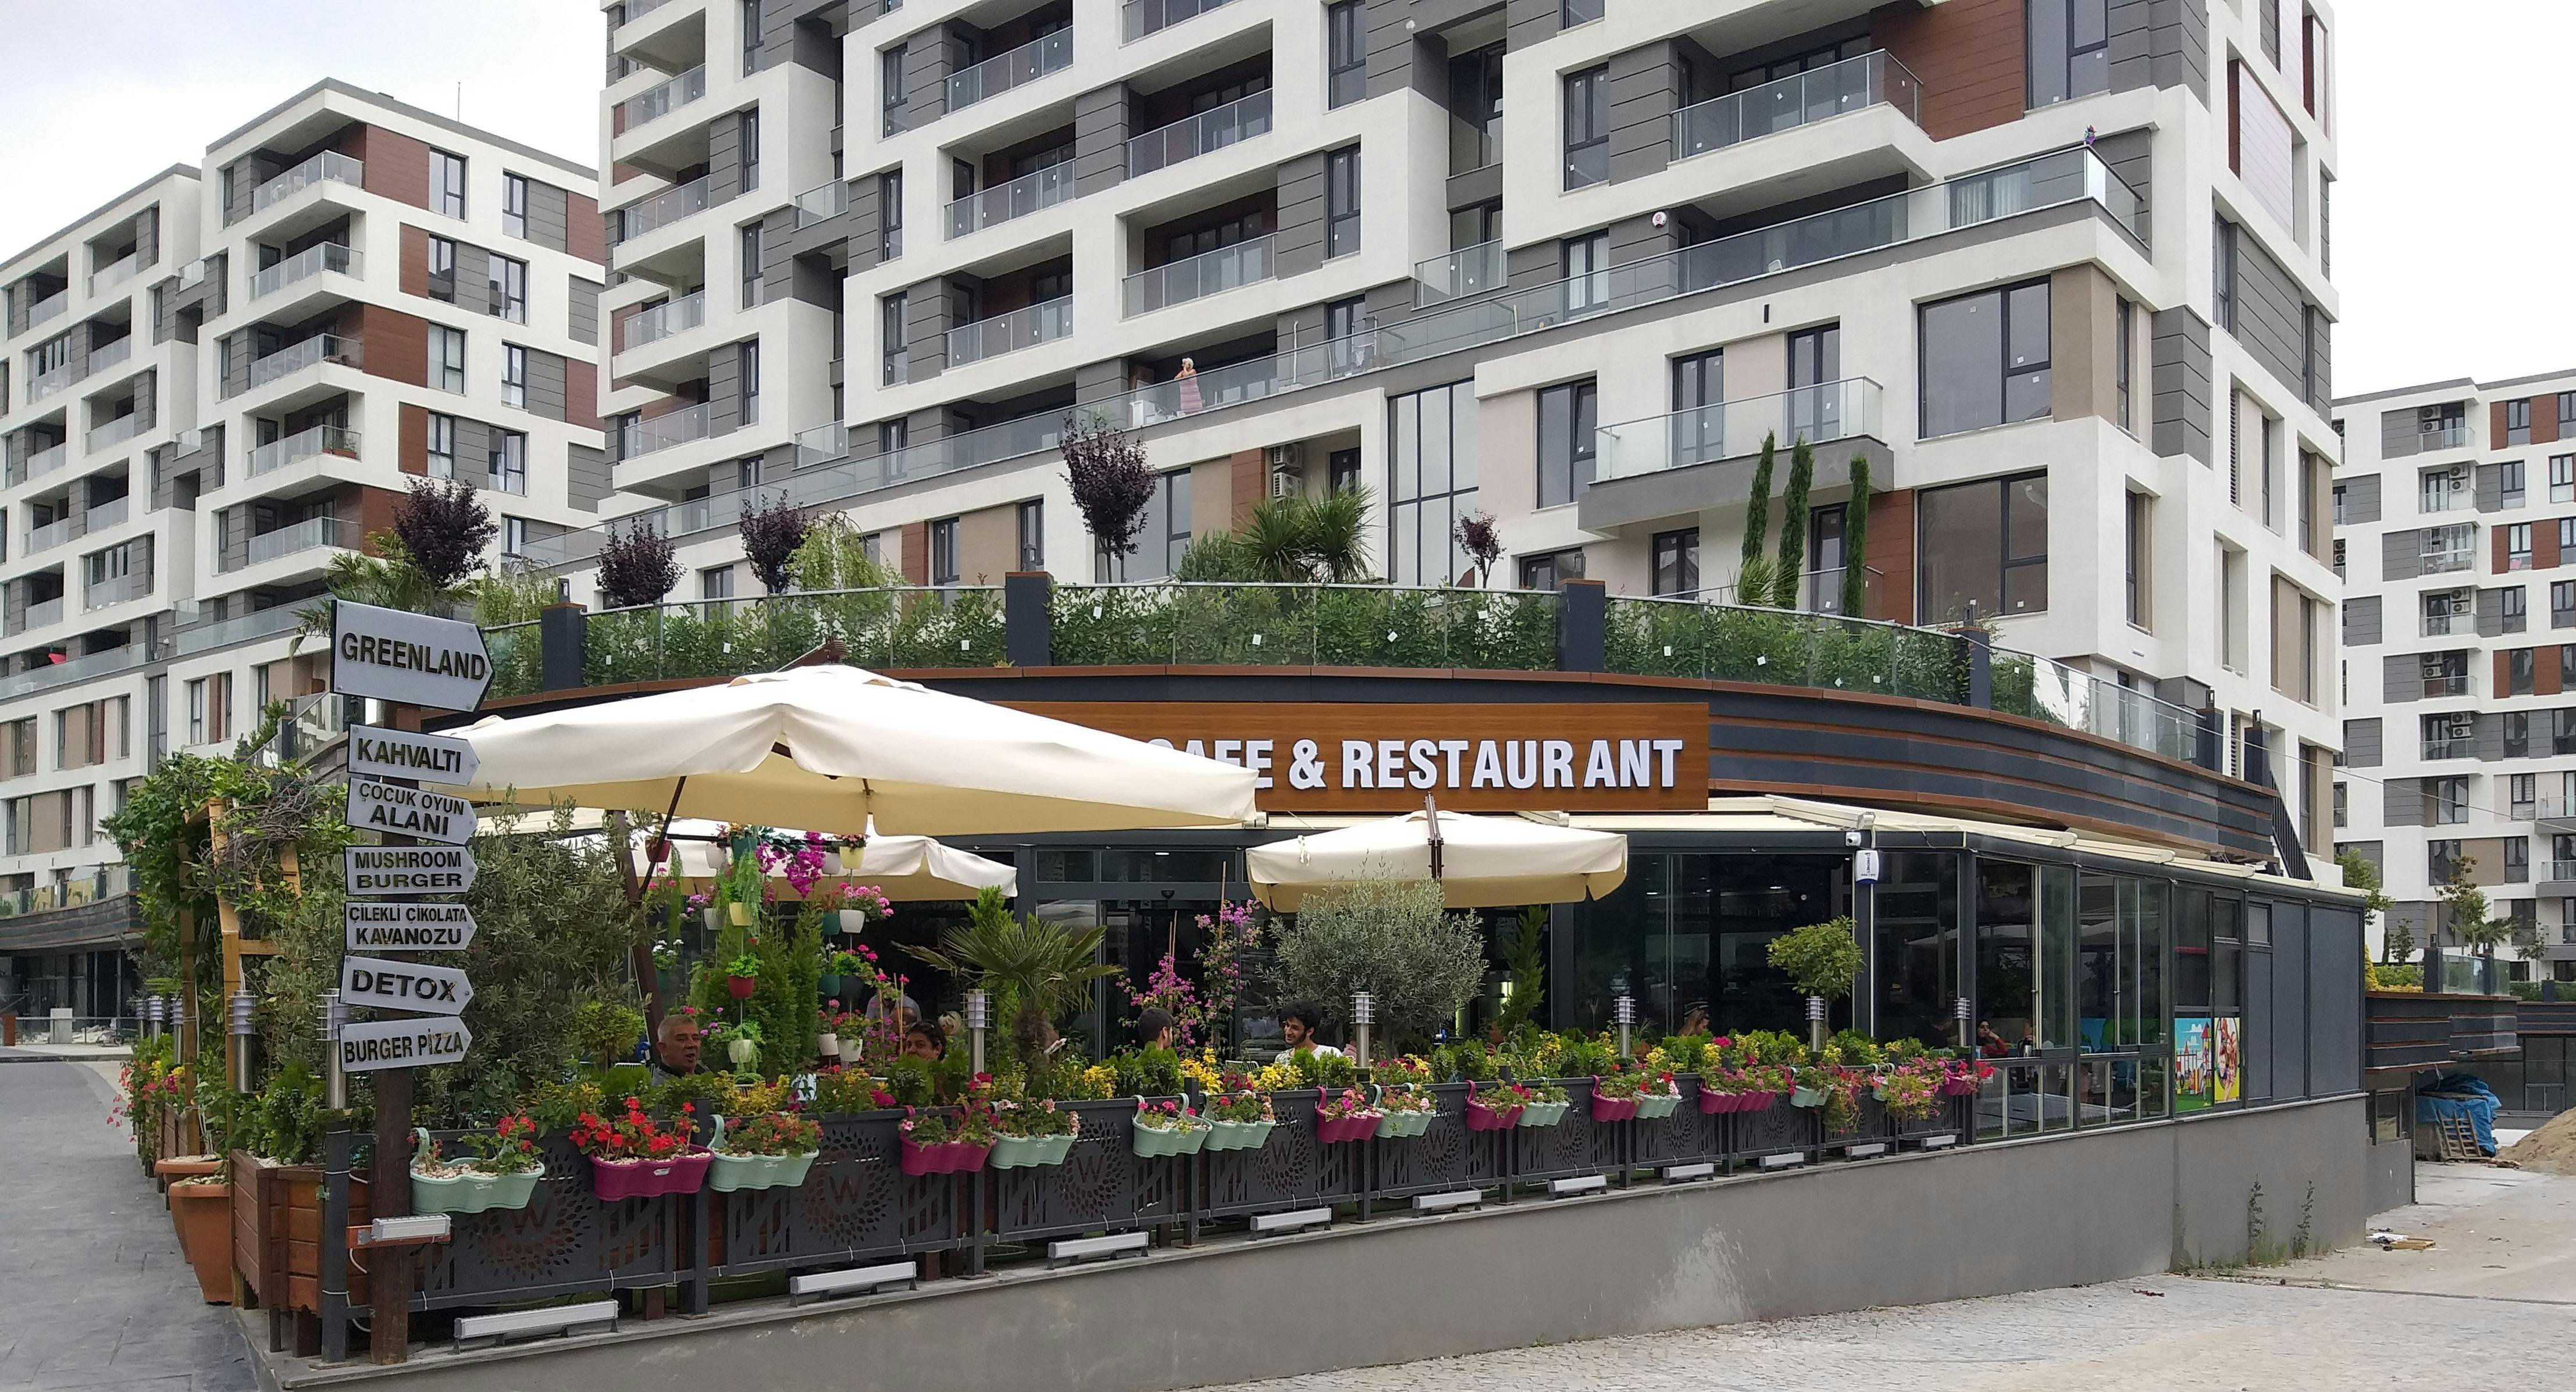 Beylikdüzü, İstanbul şehrindeki Green Land Cafe & Restaurant restoranının fotoğrafı